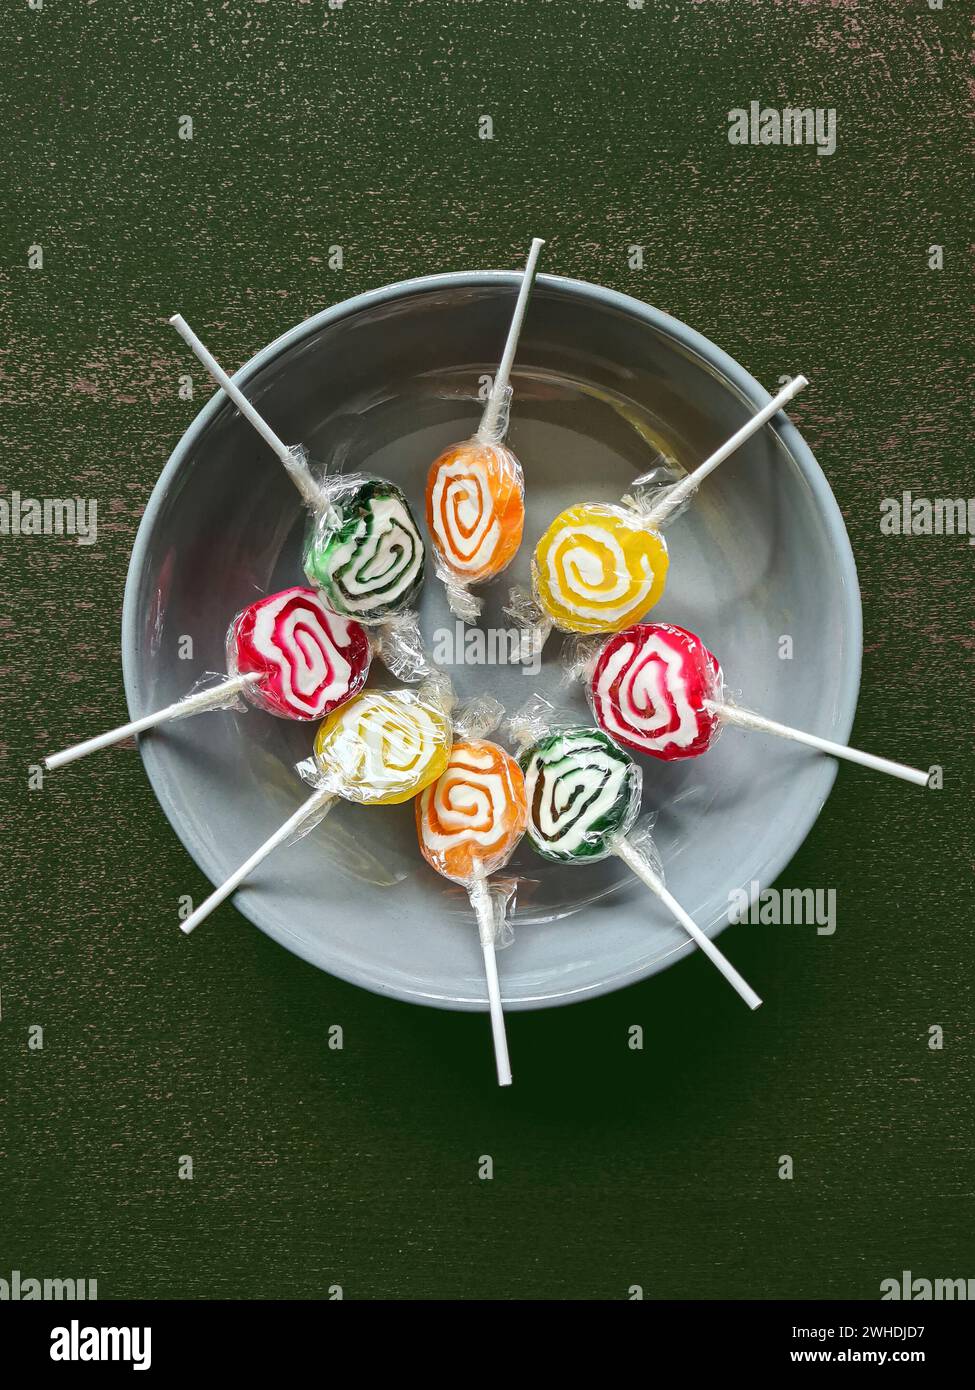 Huit sucettes colorées sont encore enveloppées dans une feuille de plastique en cercle dans un bol gris Banque D'Images